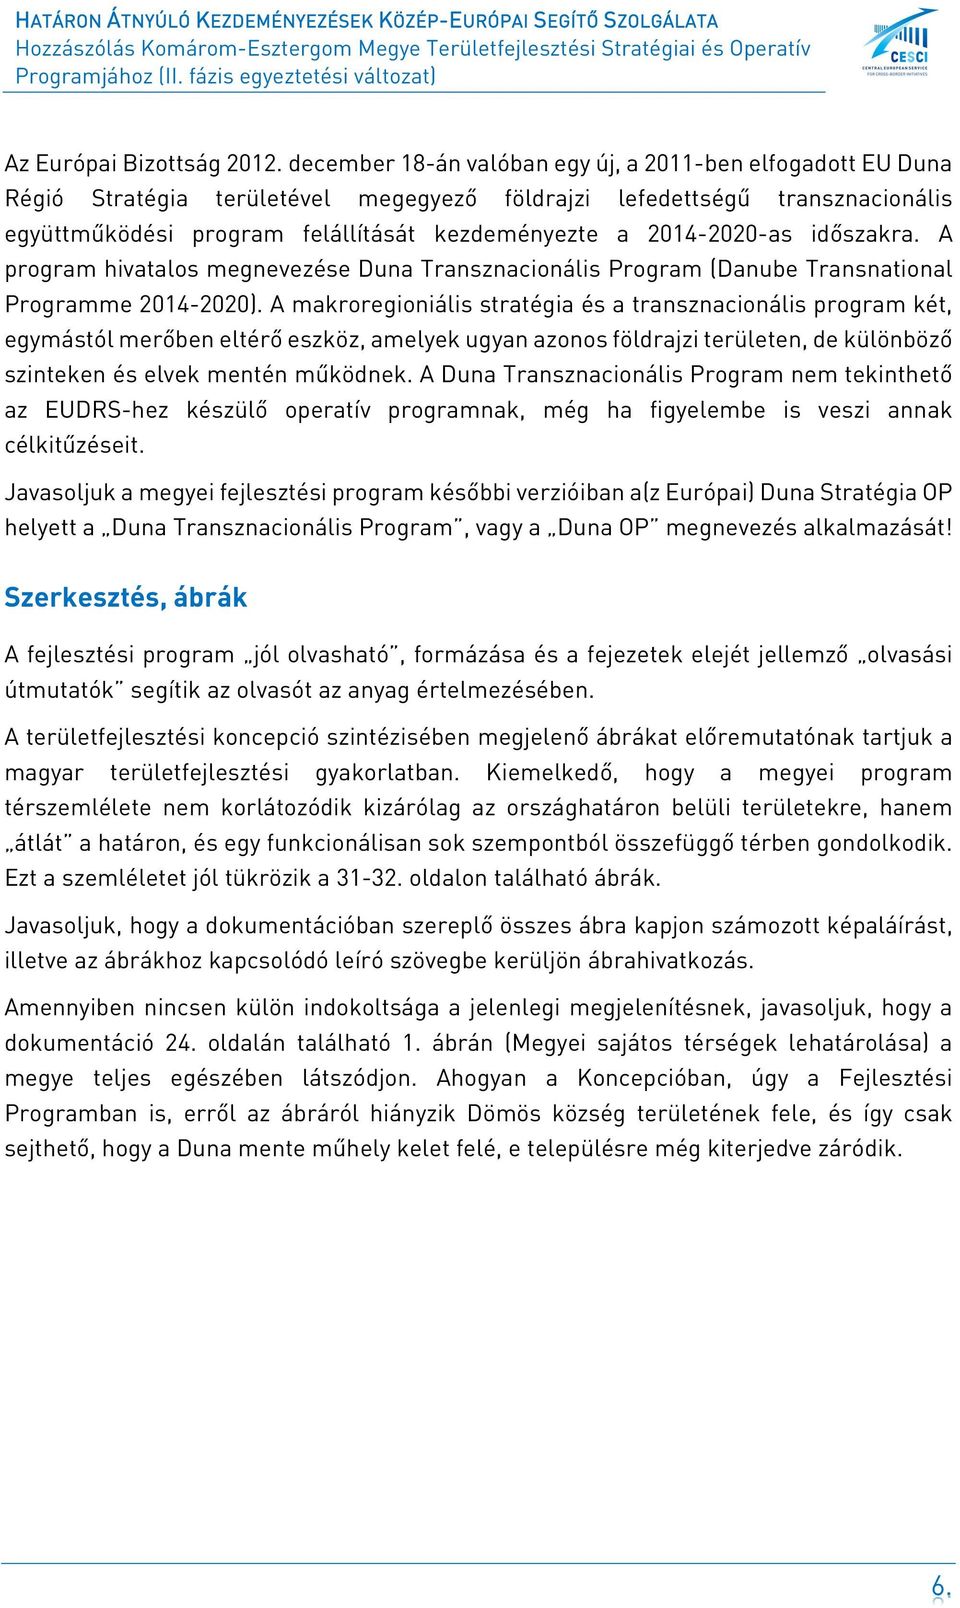 2014-2020-as időszakra. A program hivatalos megnevezése Duna Transznacionális Program (Danube Transnational Programme 2014-2020).